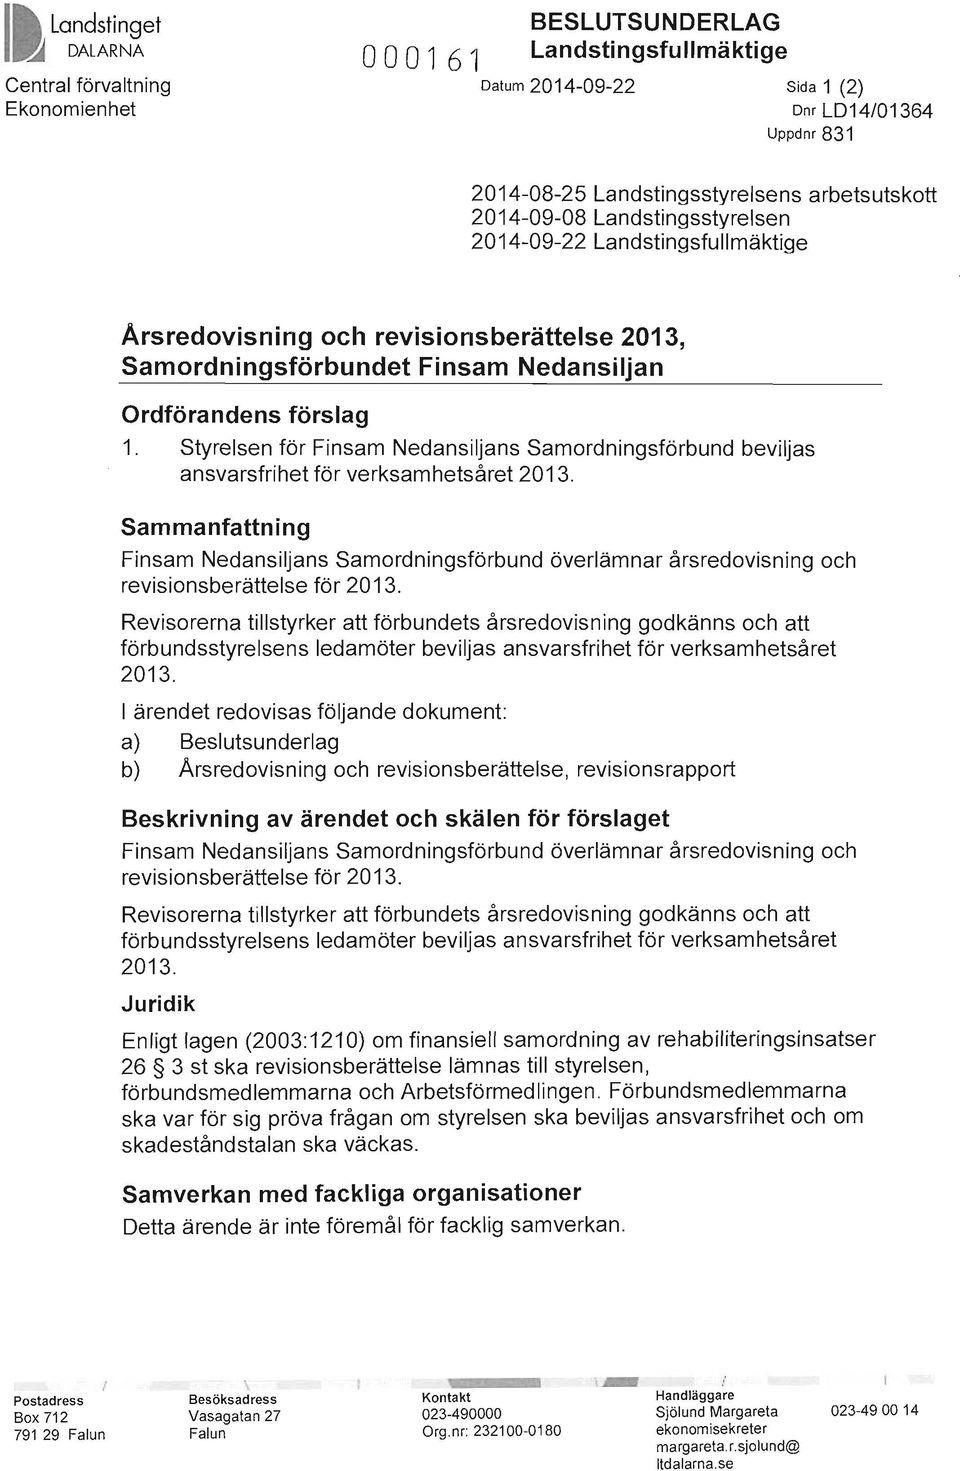 Styrelsen för Finsam Nedansiljans Samordningsförbund beviljas ansvarsfrihet för verksamhetsåret 2013.